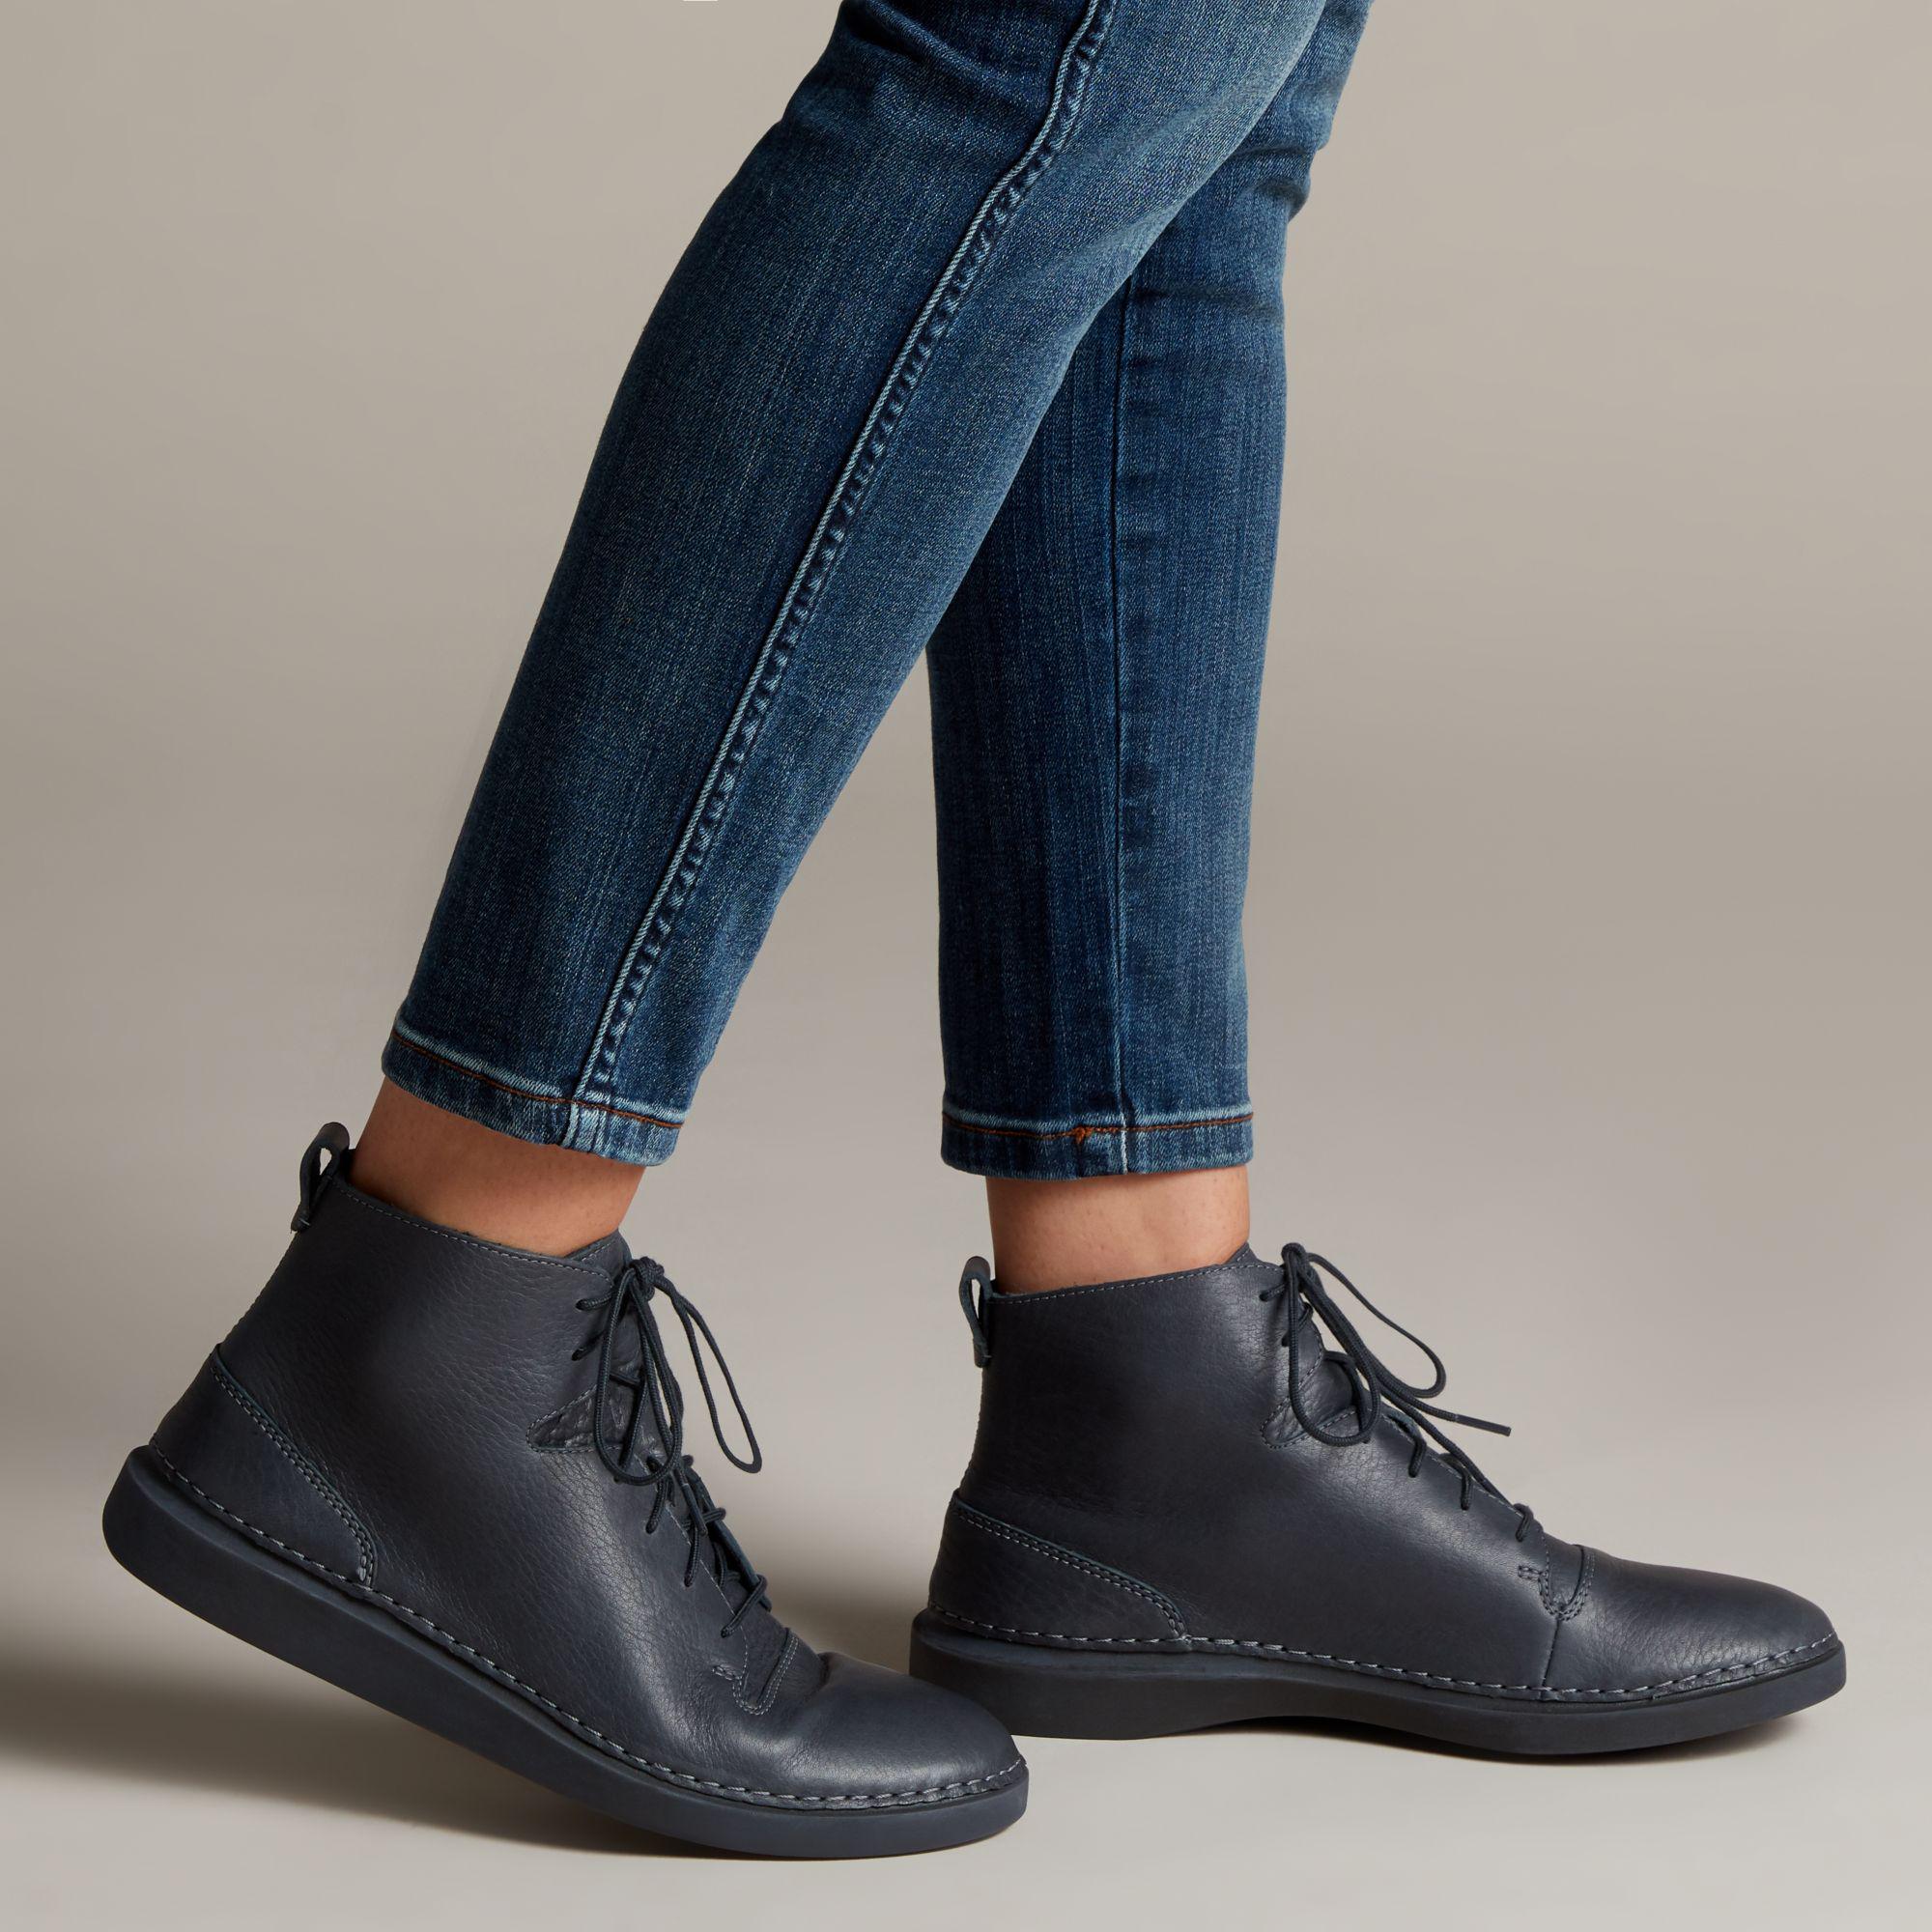 clarks men's hale rise classic boots